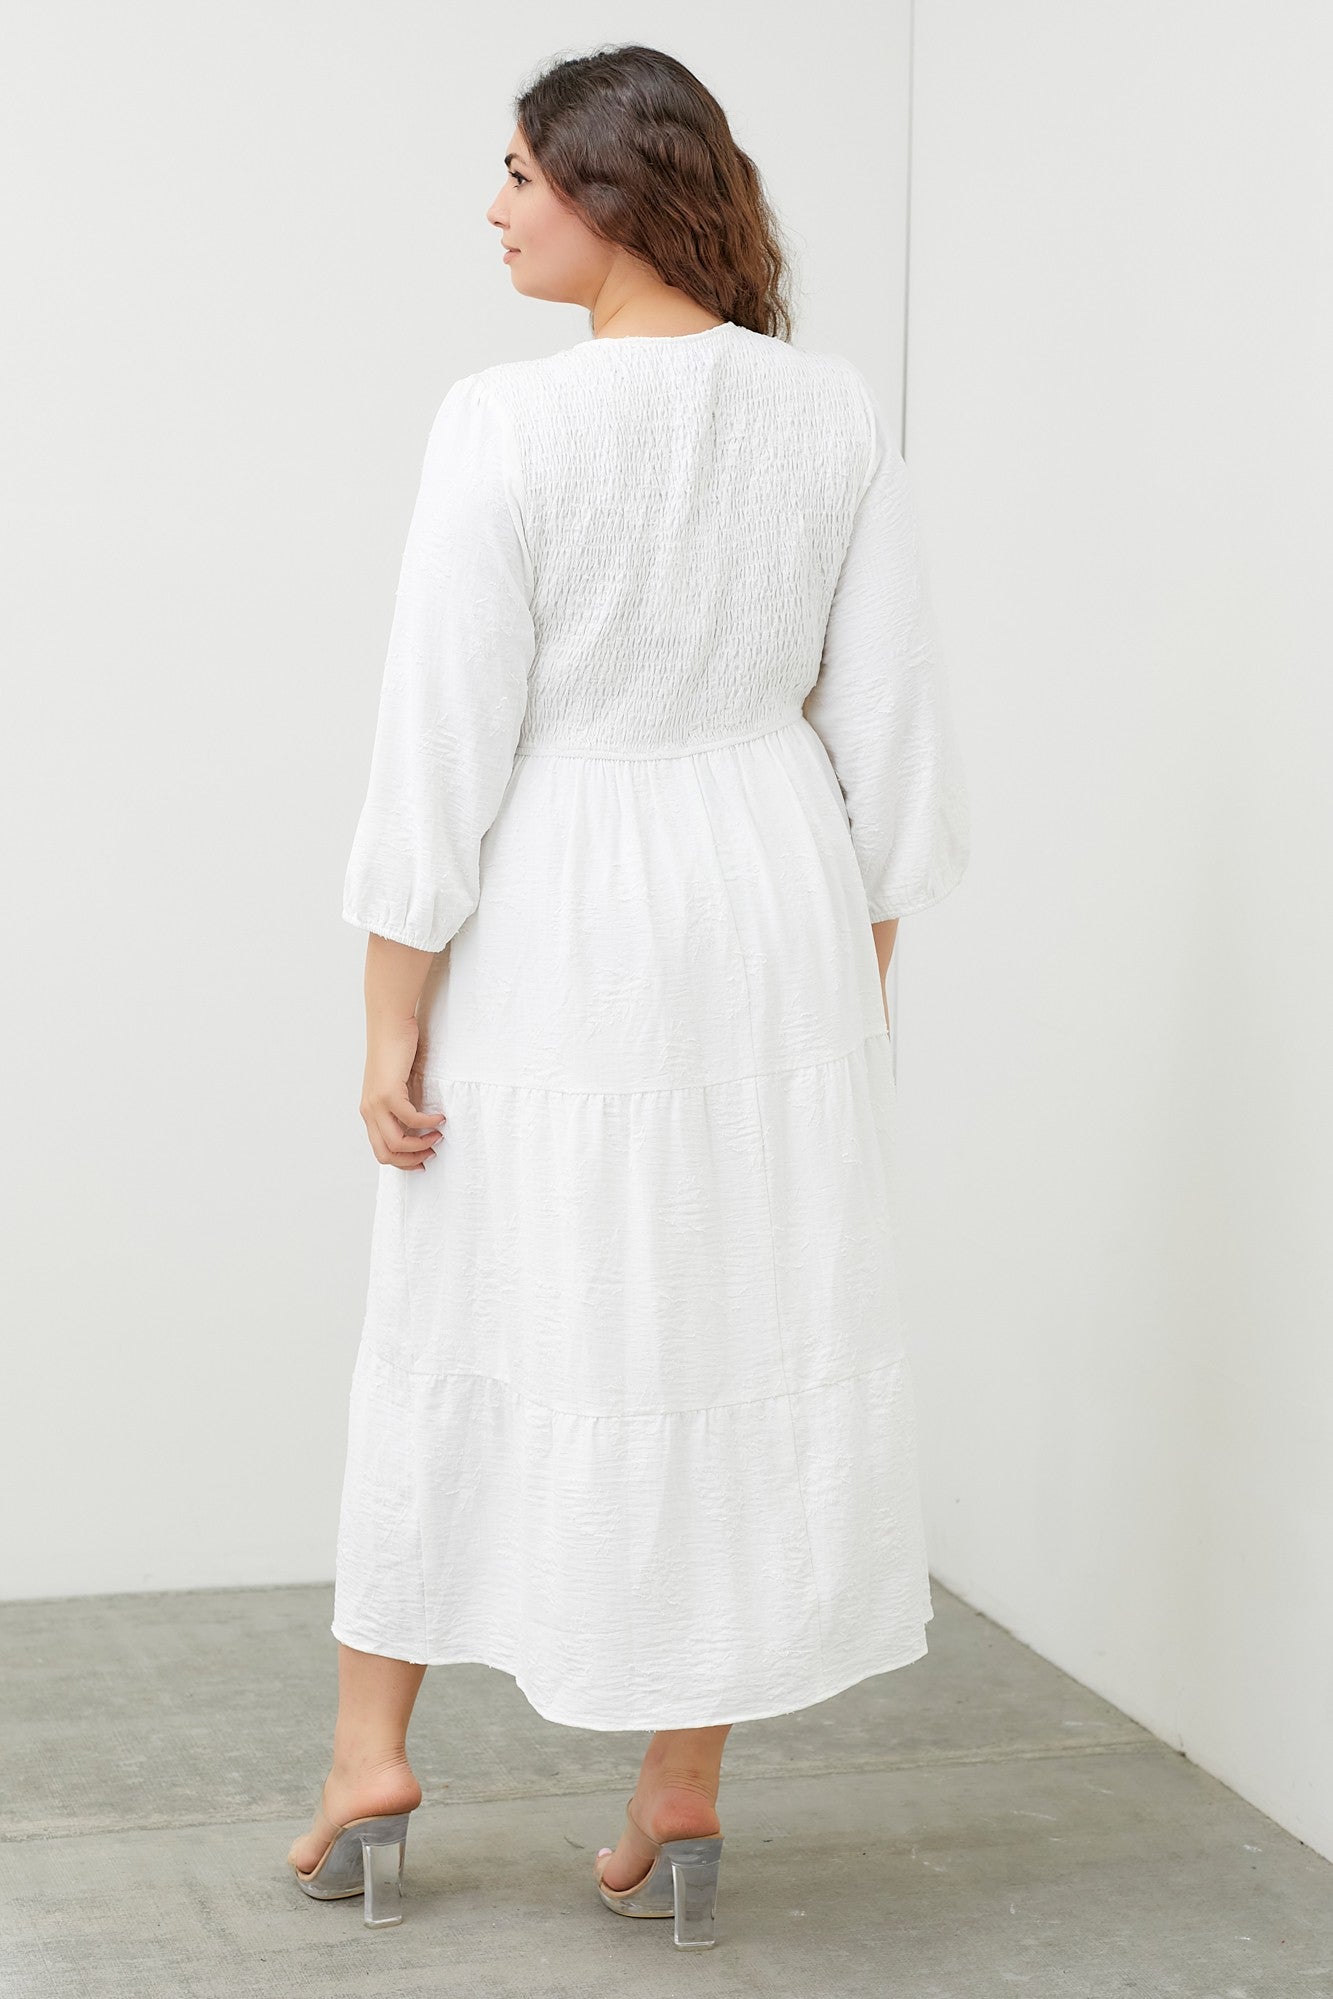 White Woven Maxi Dress Plus